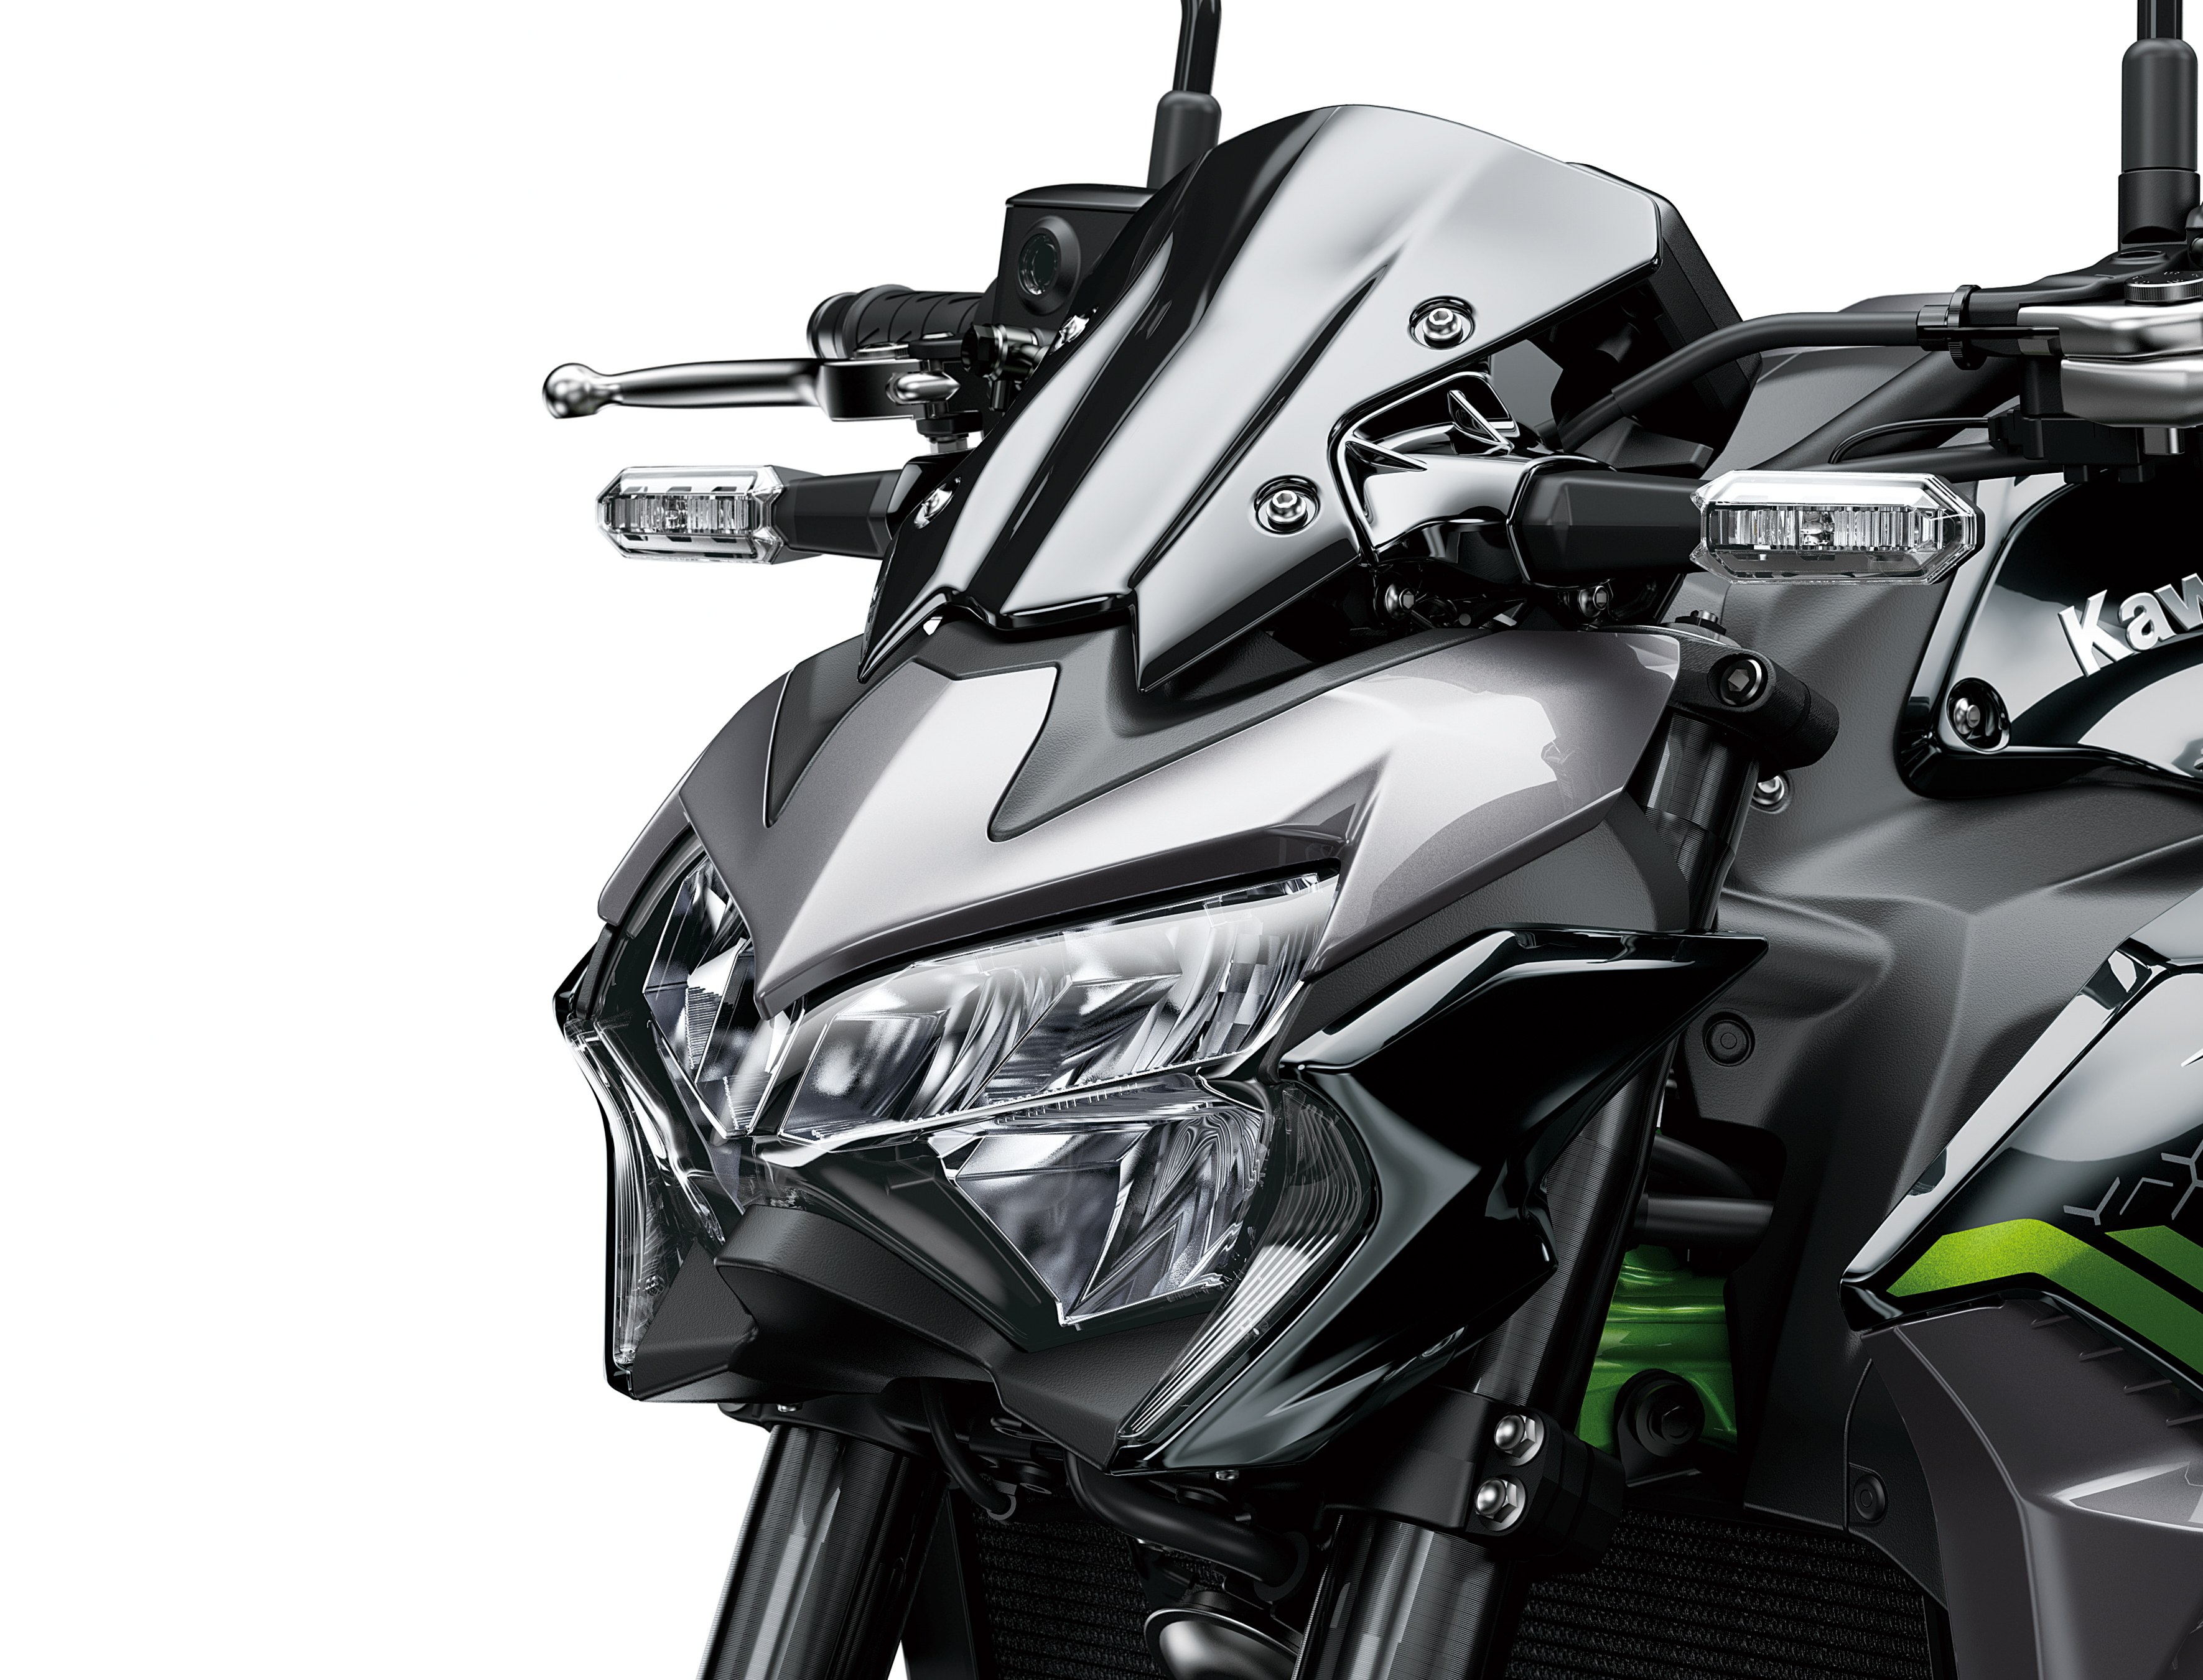 forbedre let at håndtere er mere end Z900 | Kawasaki-india.com